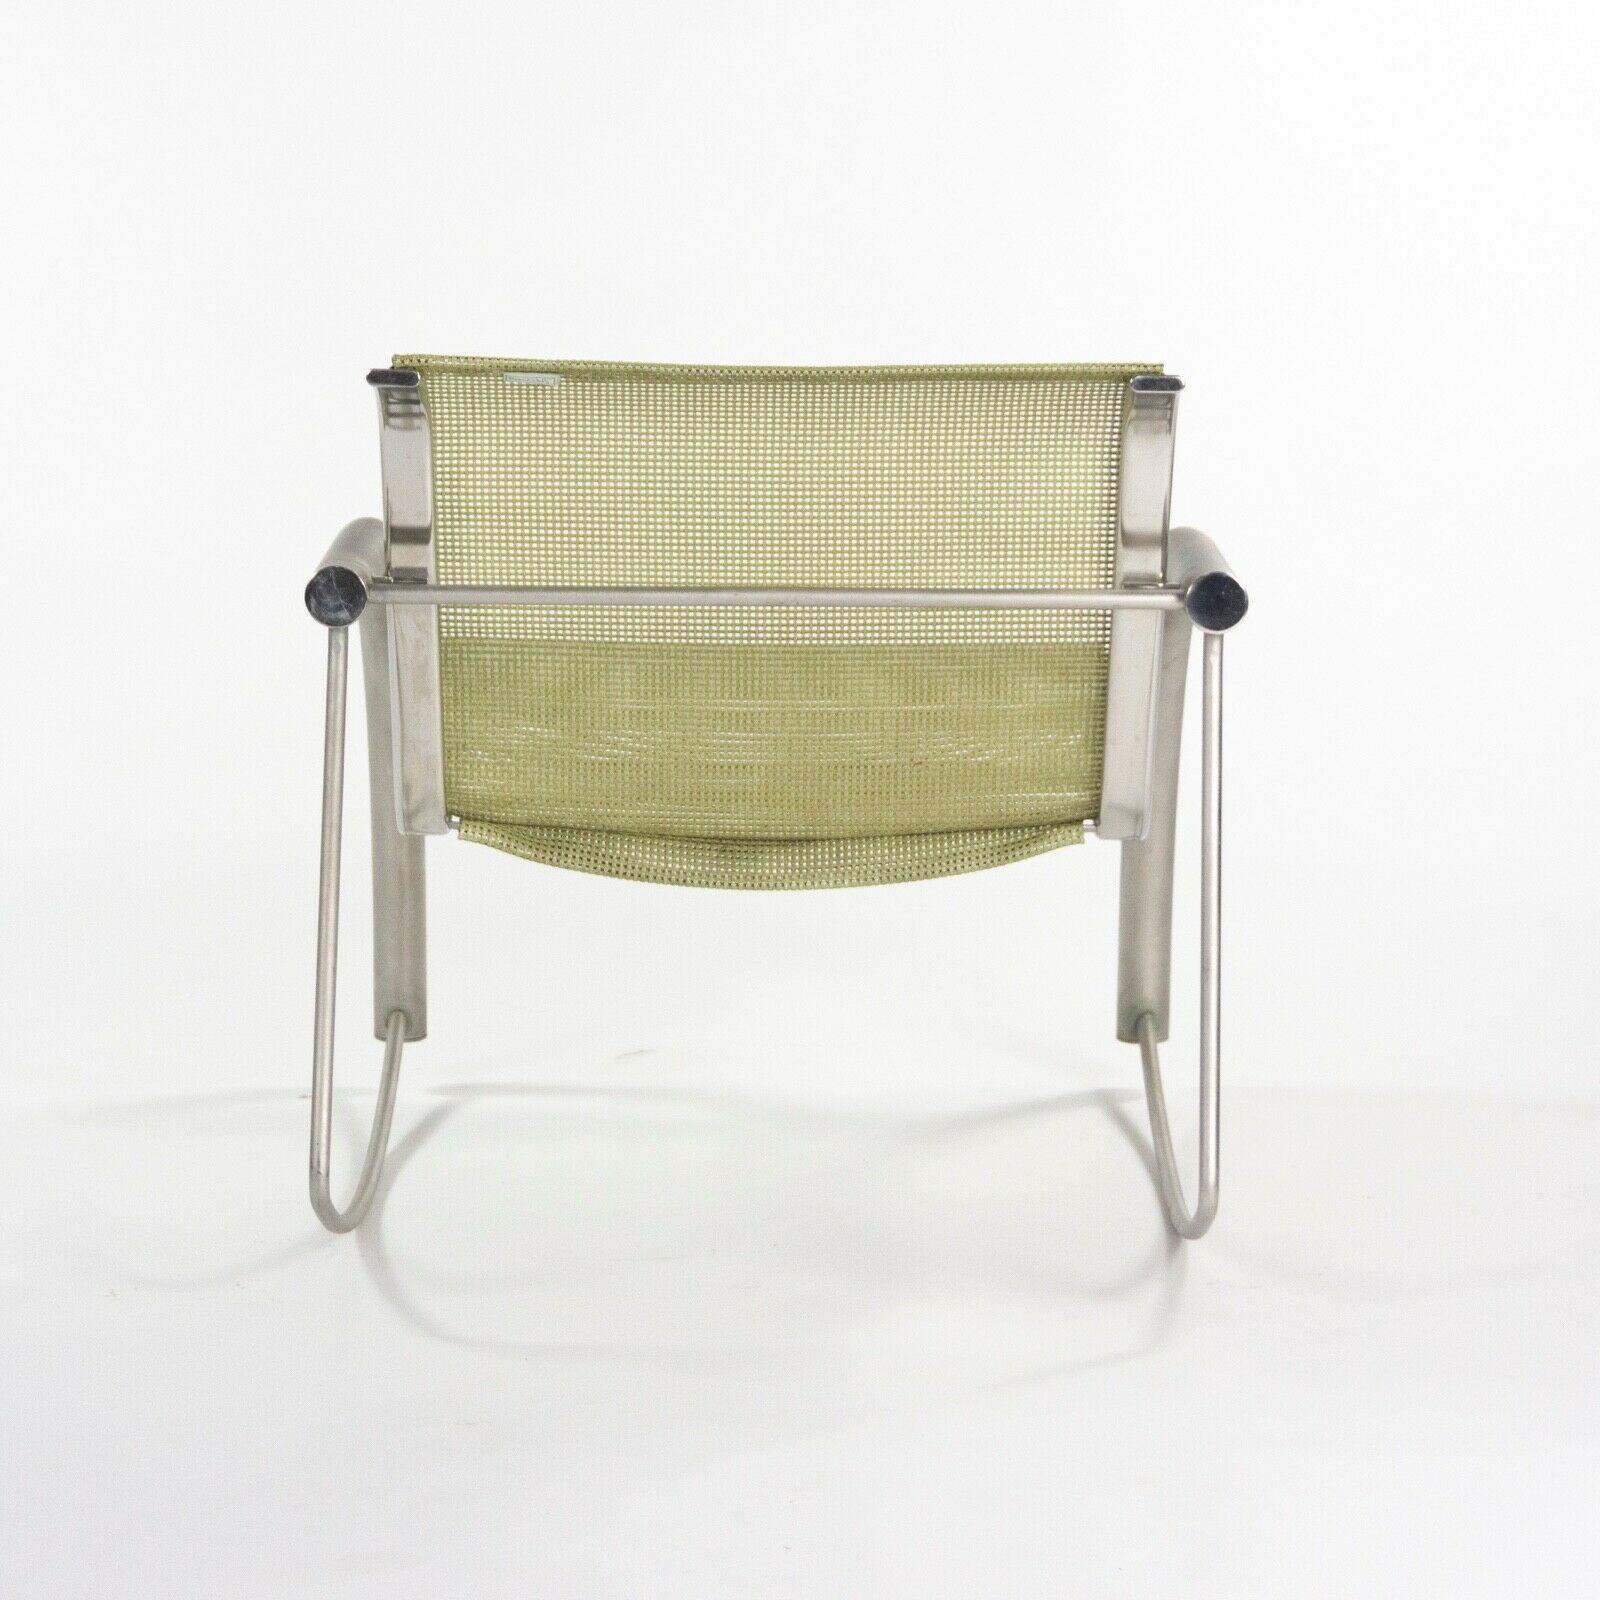 XXIe siècle et contemporain Prototype de chaise à bascule Richard Schultz 2002 Collection en acier inoxydable et maille